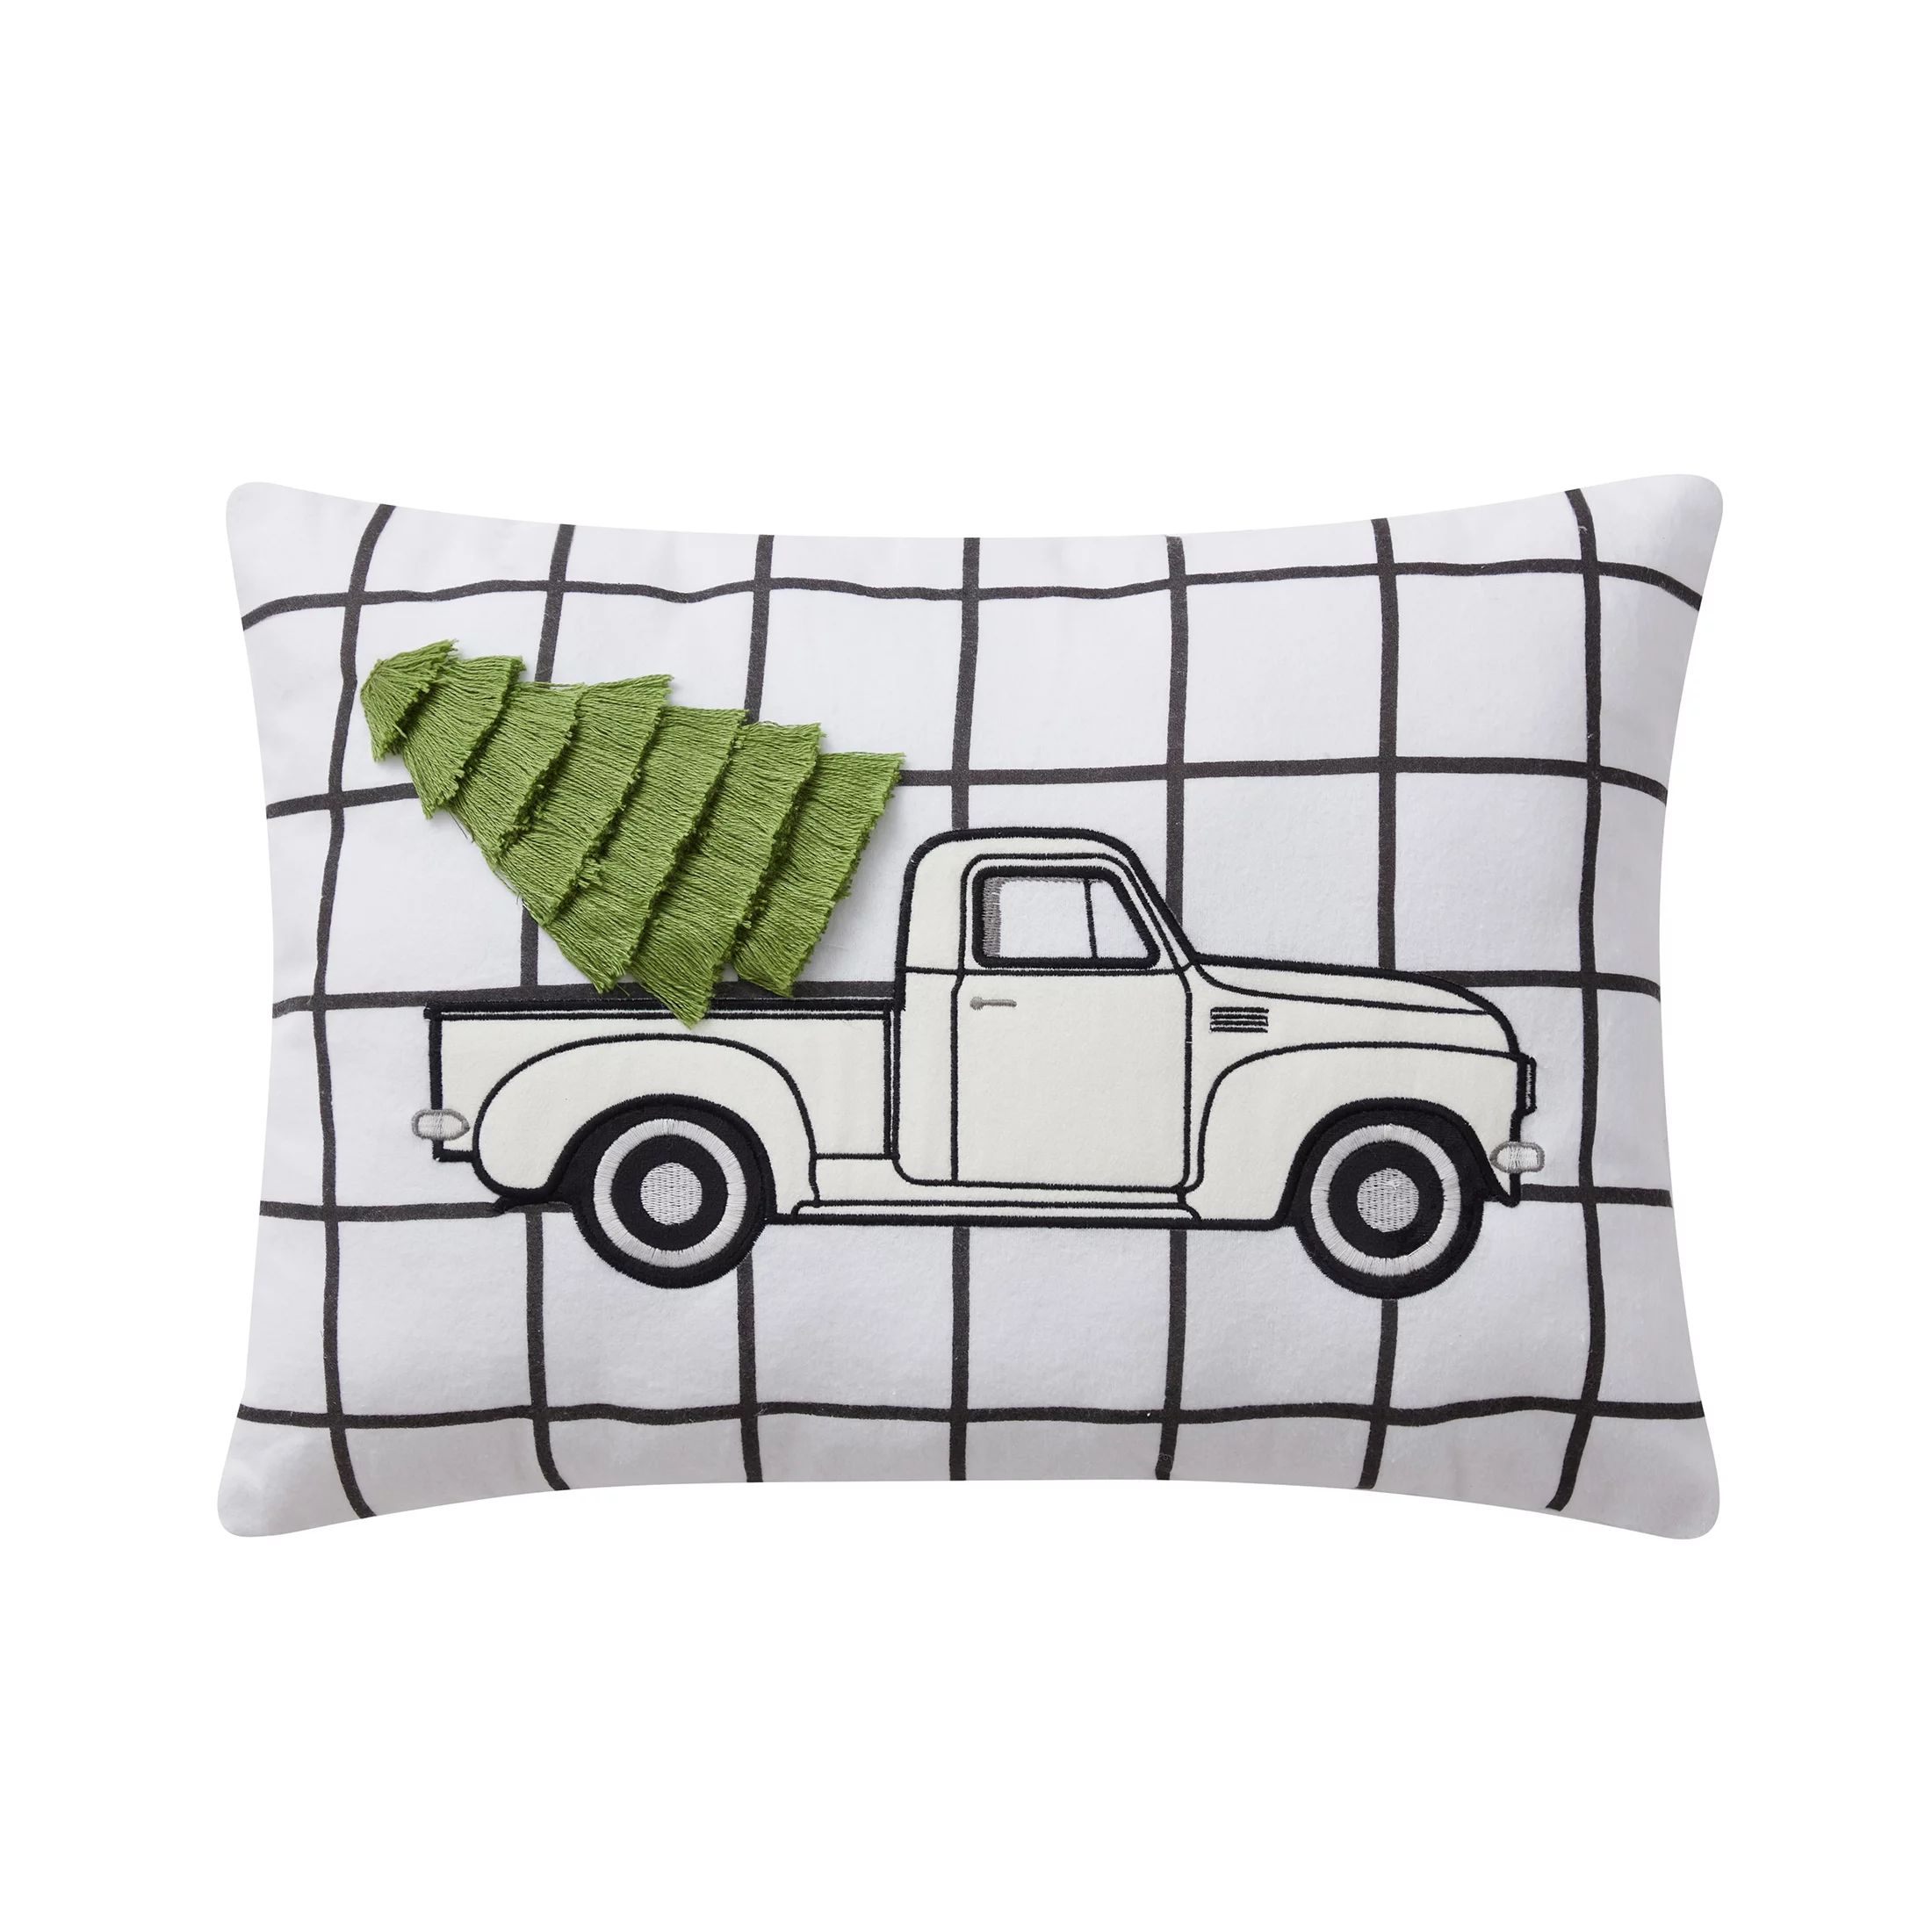 My Texas House Holiday Truck Oblong Decorative Pillow, 14" x 20", Green - Walmart.com | Walmart (US)